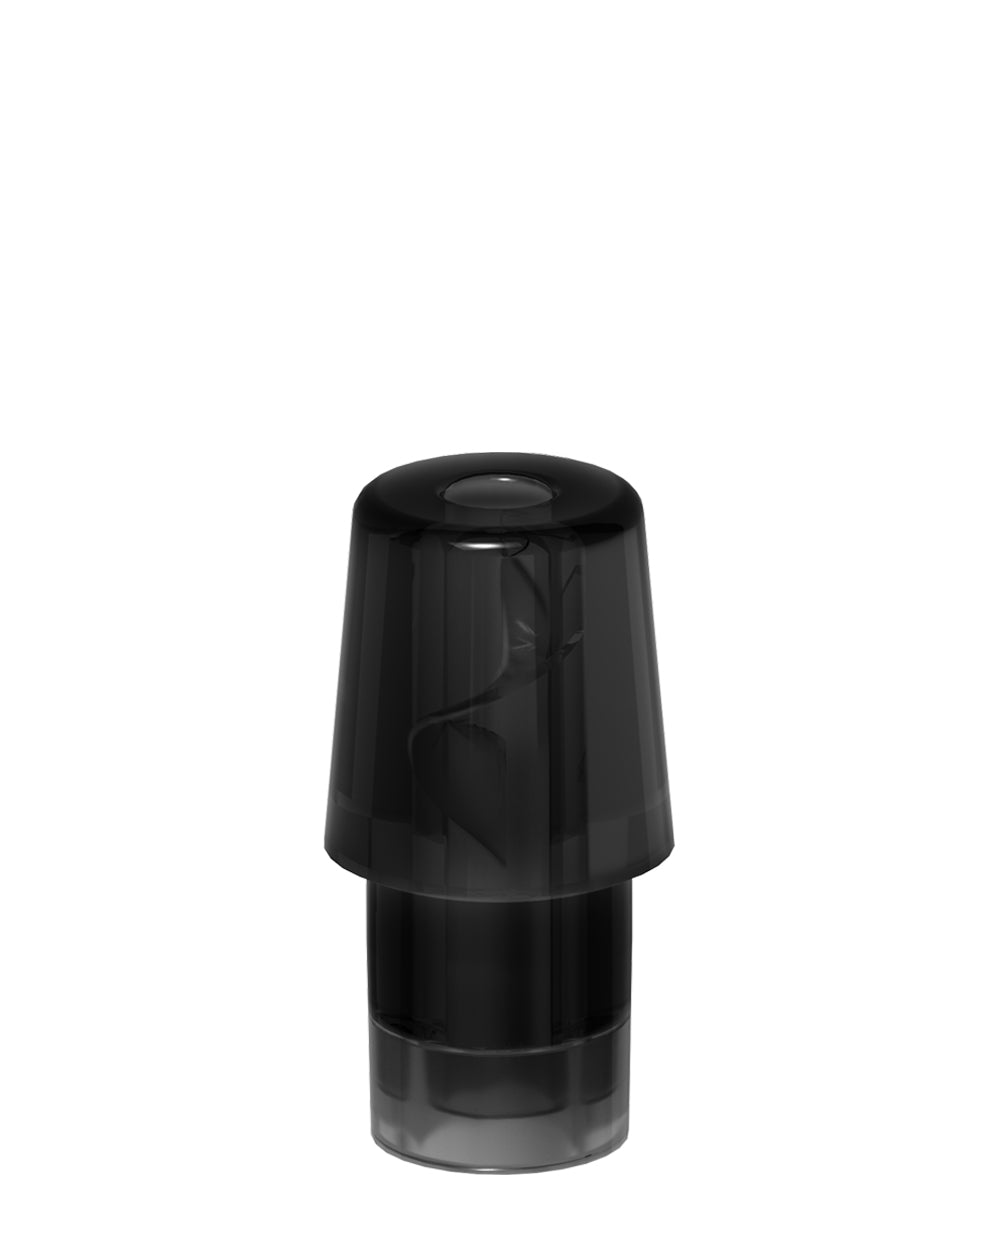 AVD | Stem White Hemp Plastic Blend Rechargeable Disposable Vape Pen w/ Black Vortex Mouthpiece | 1mL - 220 mAh  - 3